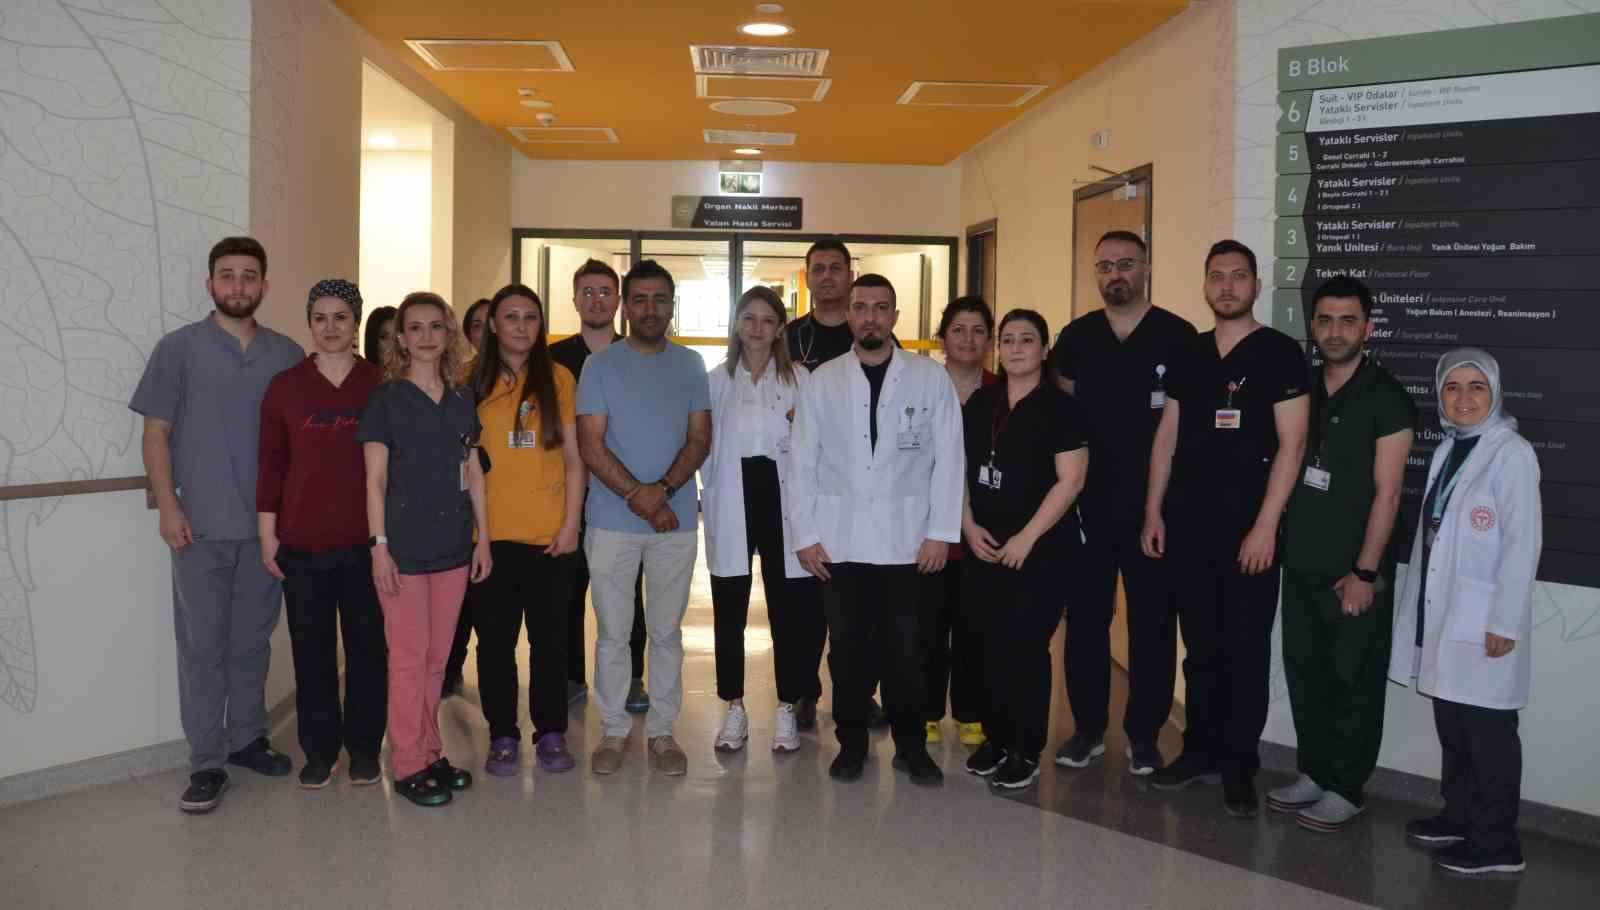 Bursa Şehir Hastanesi’nde iki hastaya böbrek nakli yapıldı